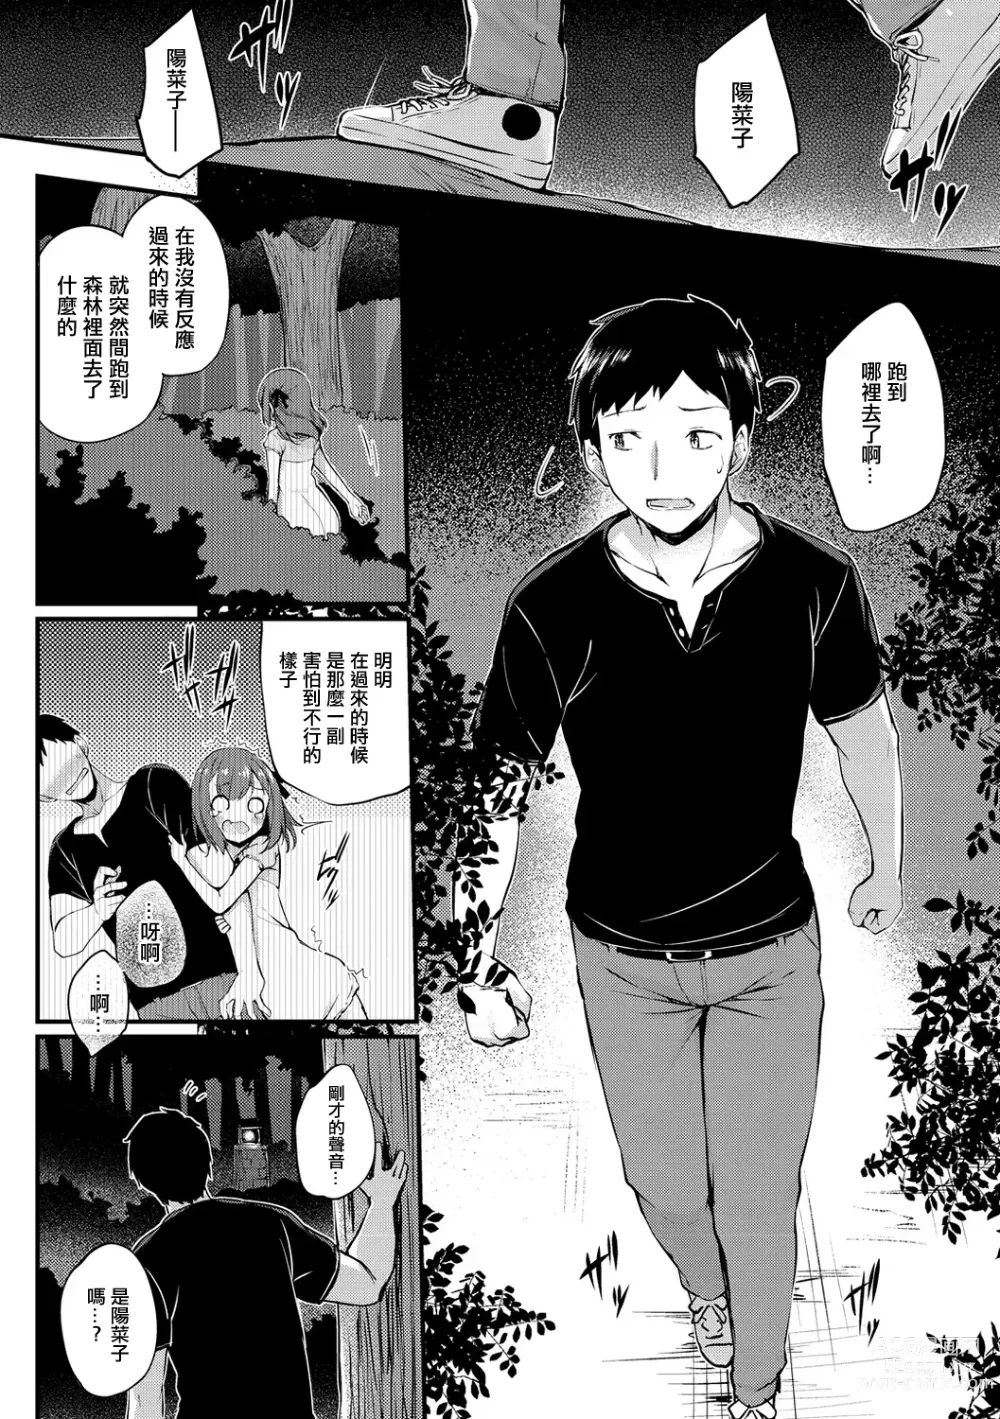 Page 6 of manga Atarashii Watashi